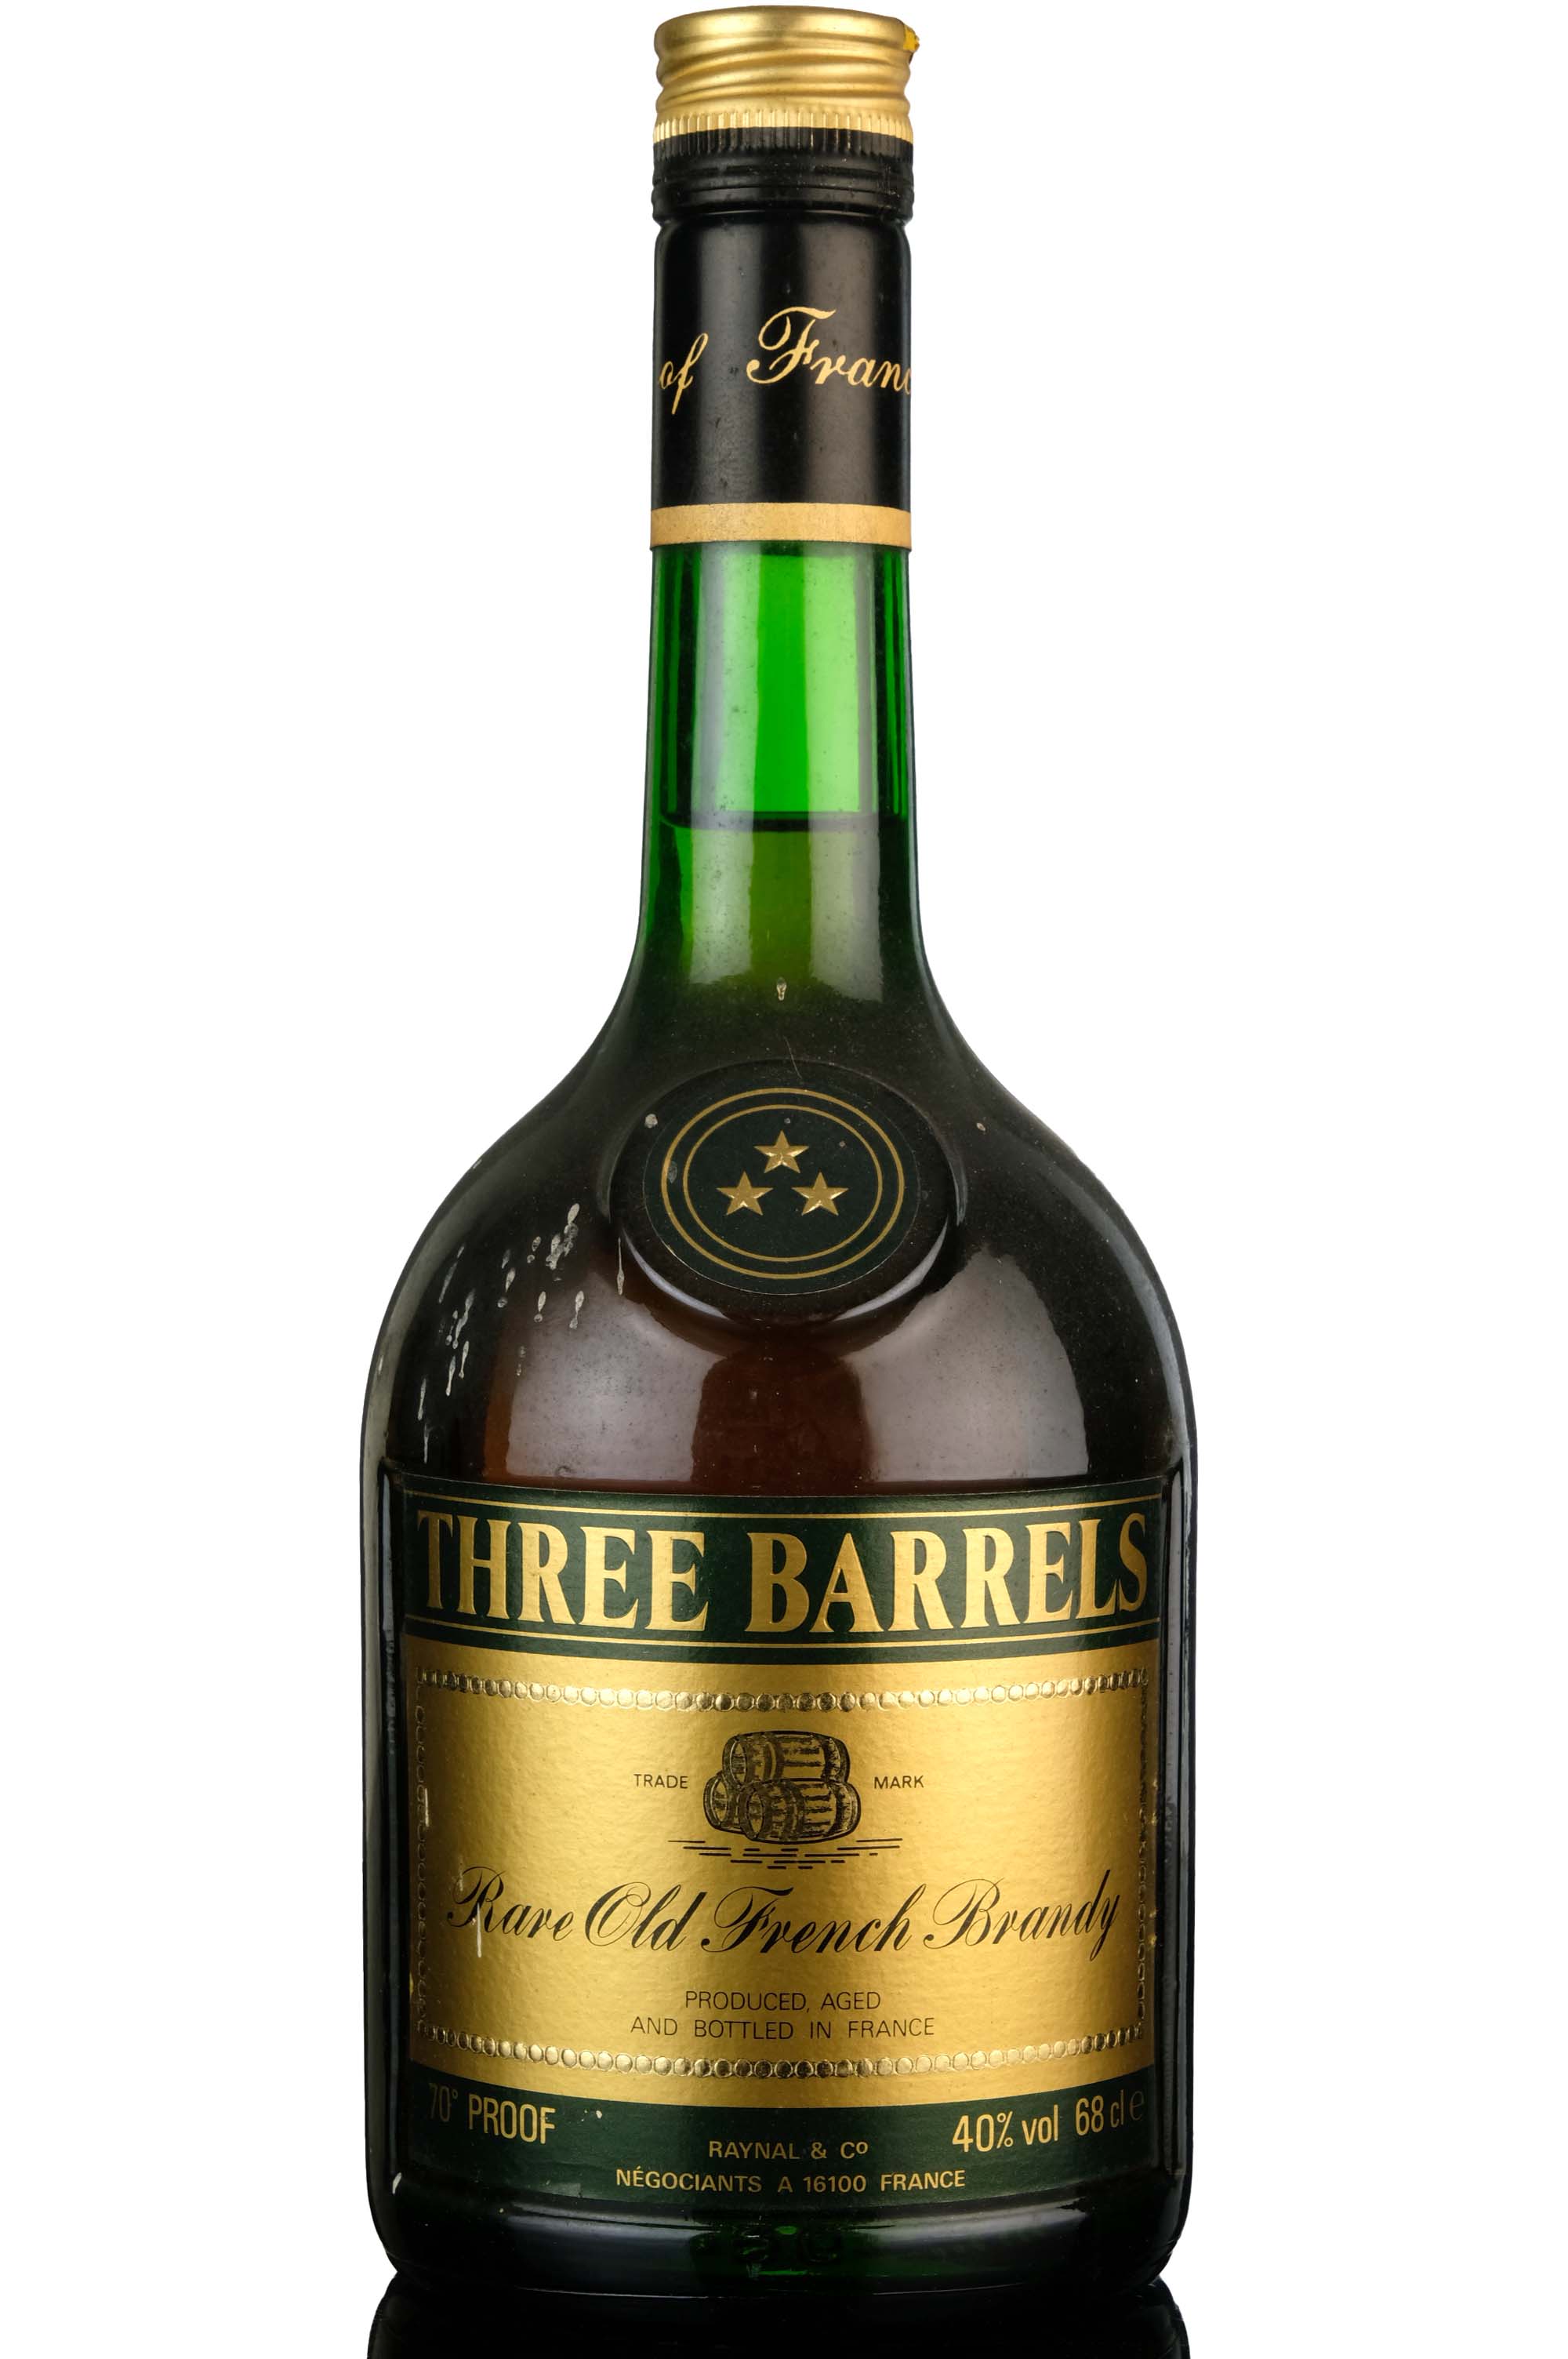 Three Barrels 3 Star Brandy